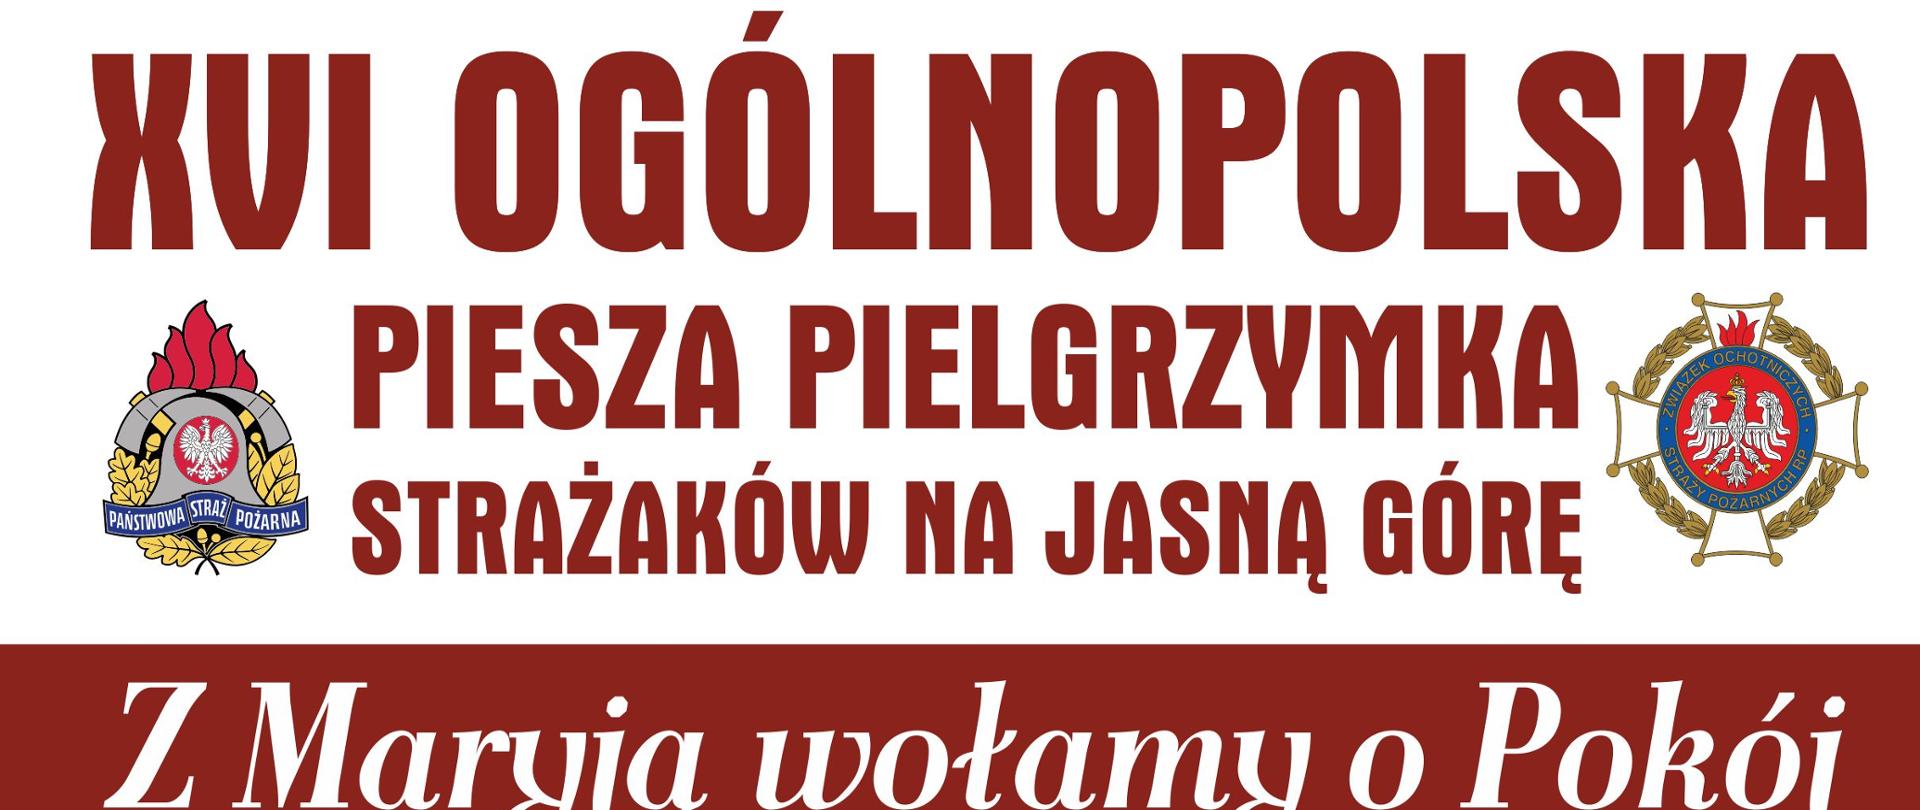 Plakat promujżcy XVI Ogólnopolską Pieszą Pielgrzymkę Strażaków na Jasną Górę w dniach 05-14.08.2022 r. Start w Warszawie Bazylika Katedralna św. Floriana.